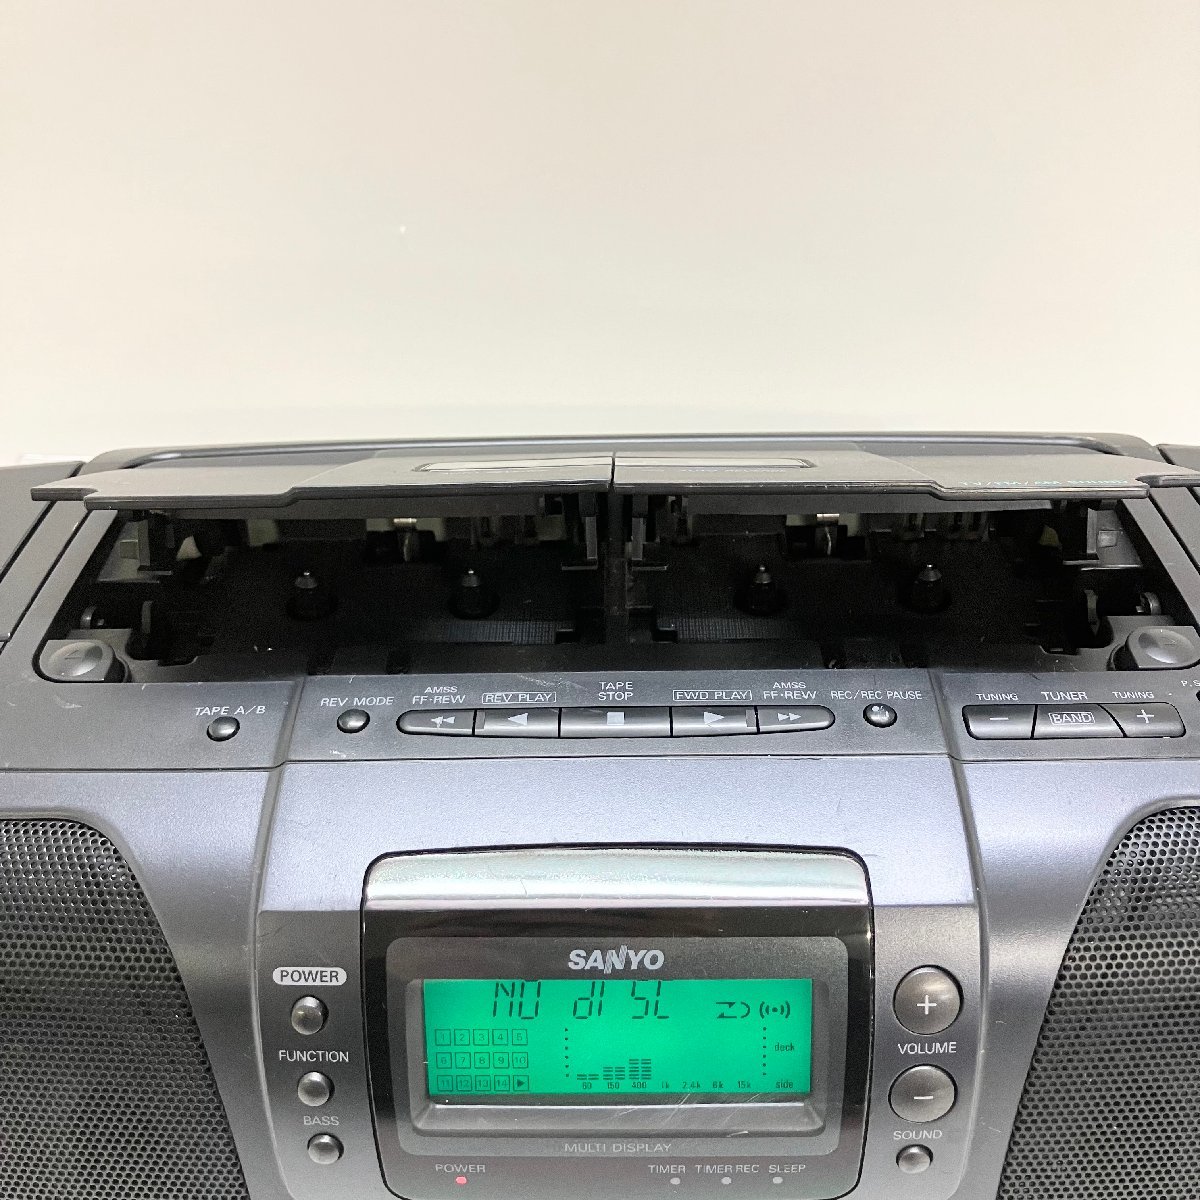 ◆【ジャンク品】SANYO サンヨー PH-PR950 Primaire CD ラジオ カセット レコーダー FM/AM 1994年製 当時物 黒 現状品 (E4)N/G60306/3/6.0_画像3